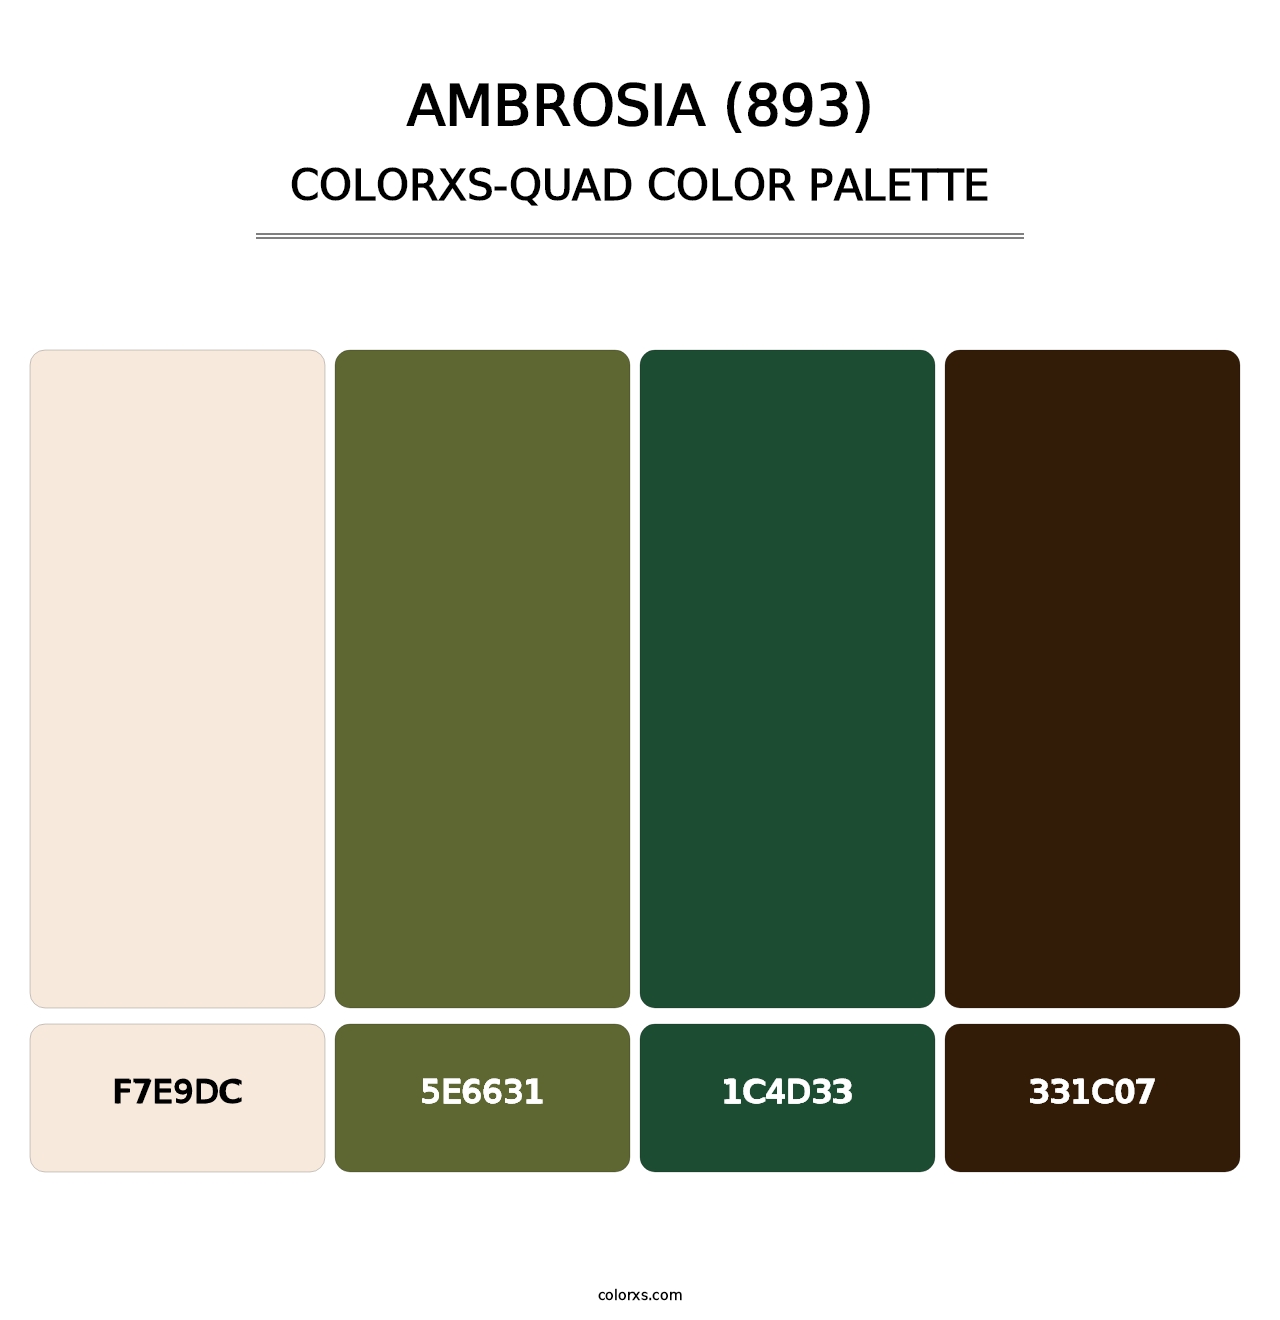 Ambrosia (893) - Colorxs Quad Palette